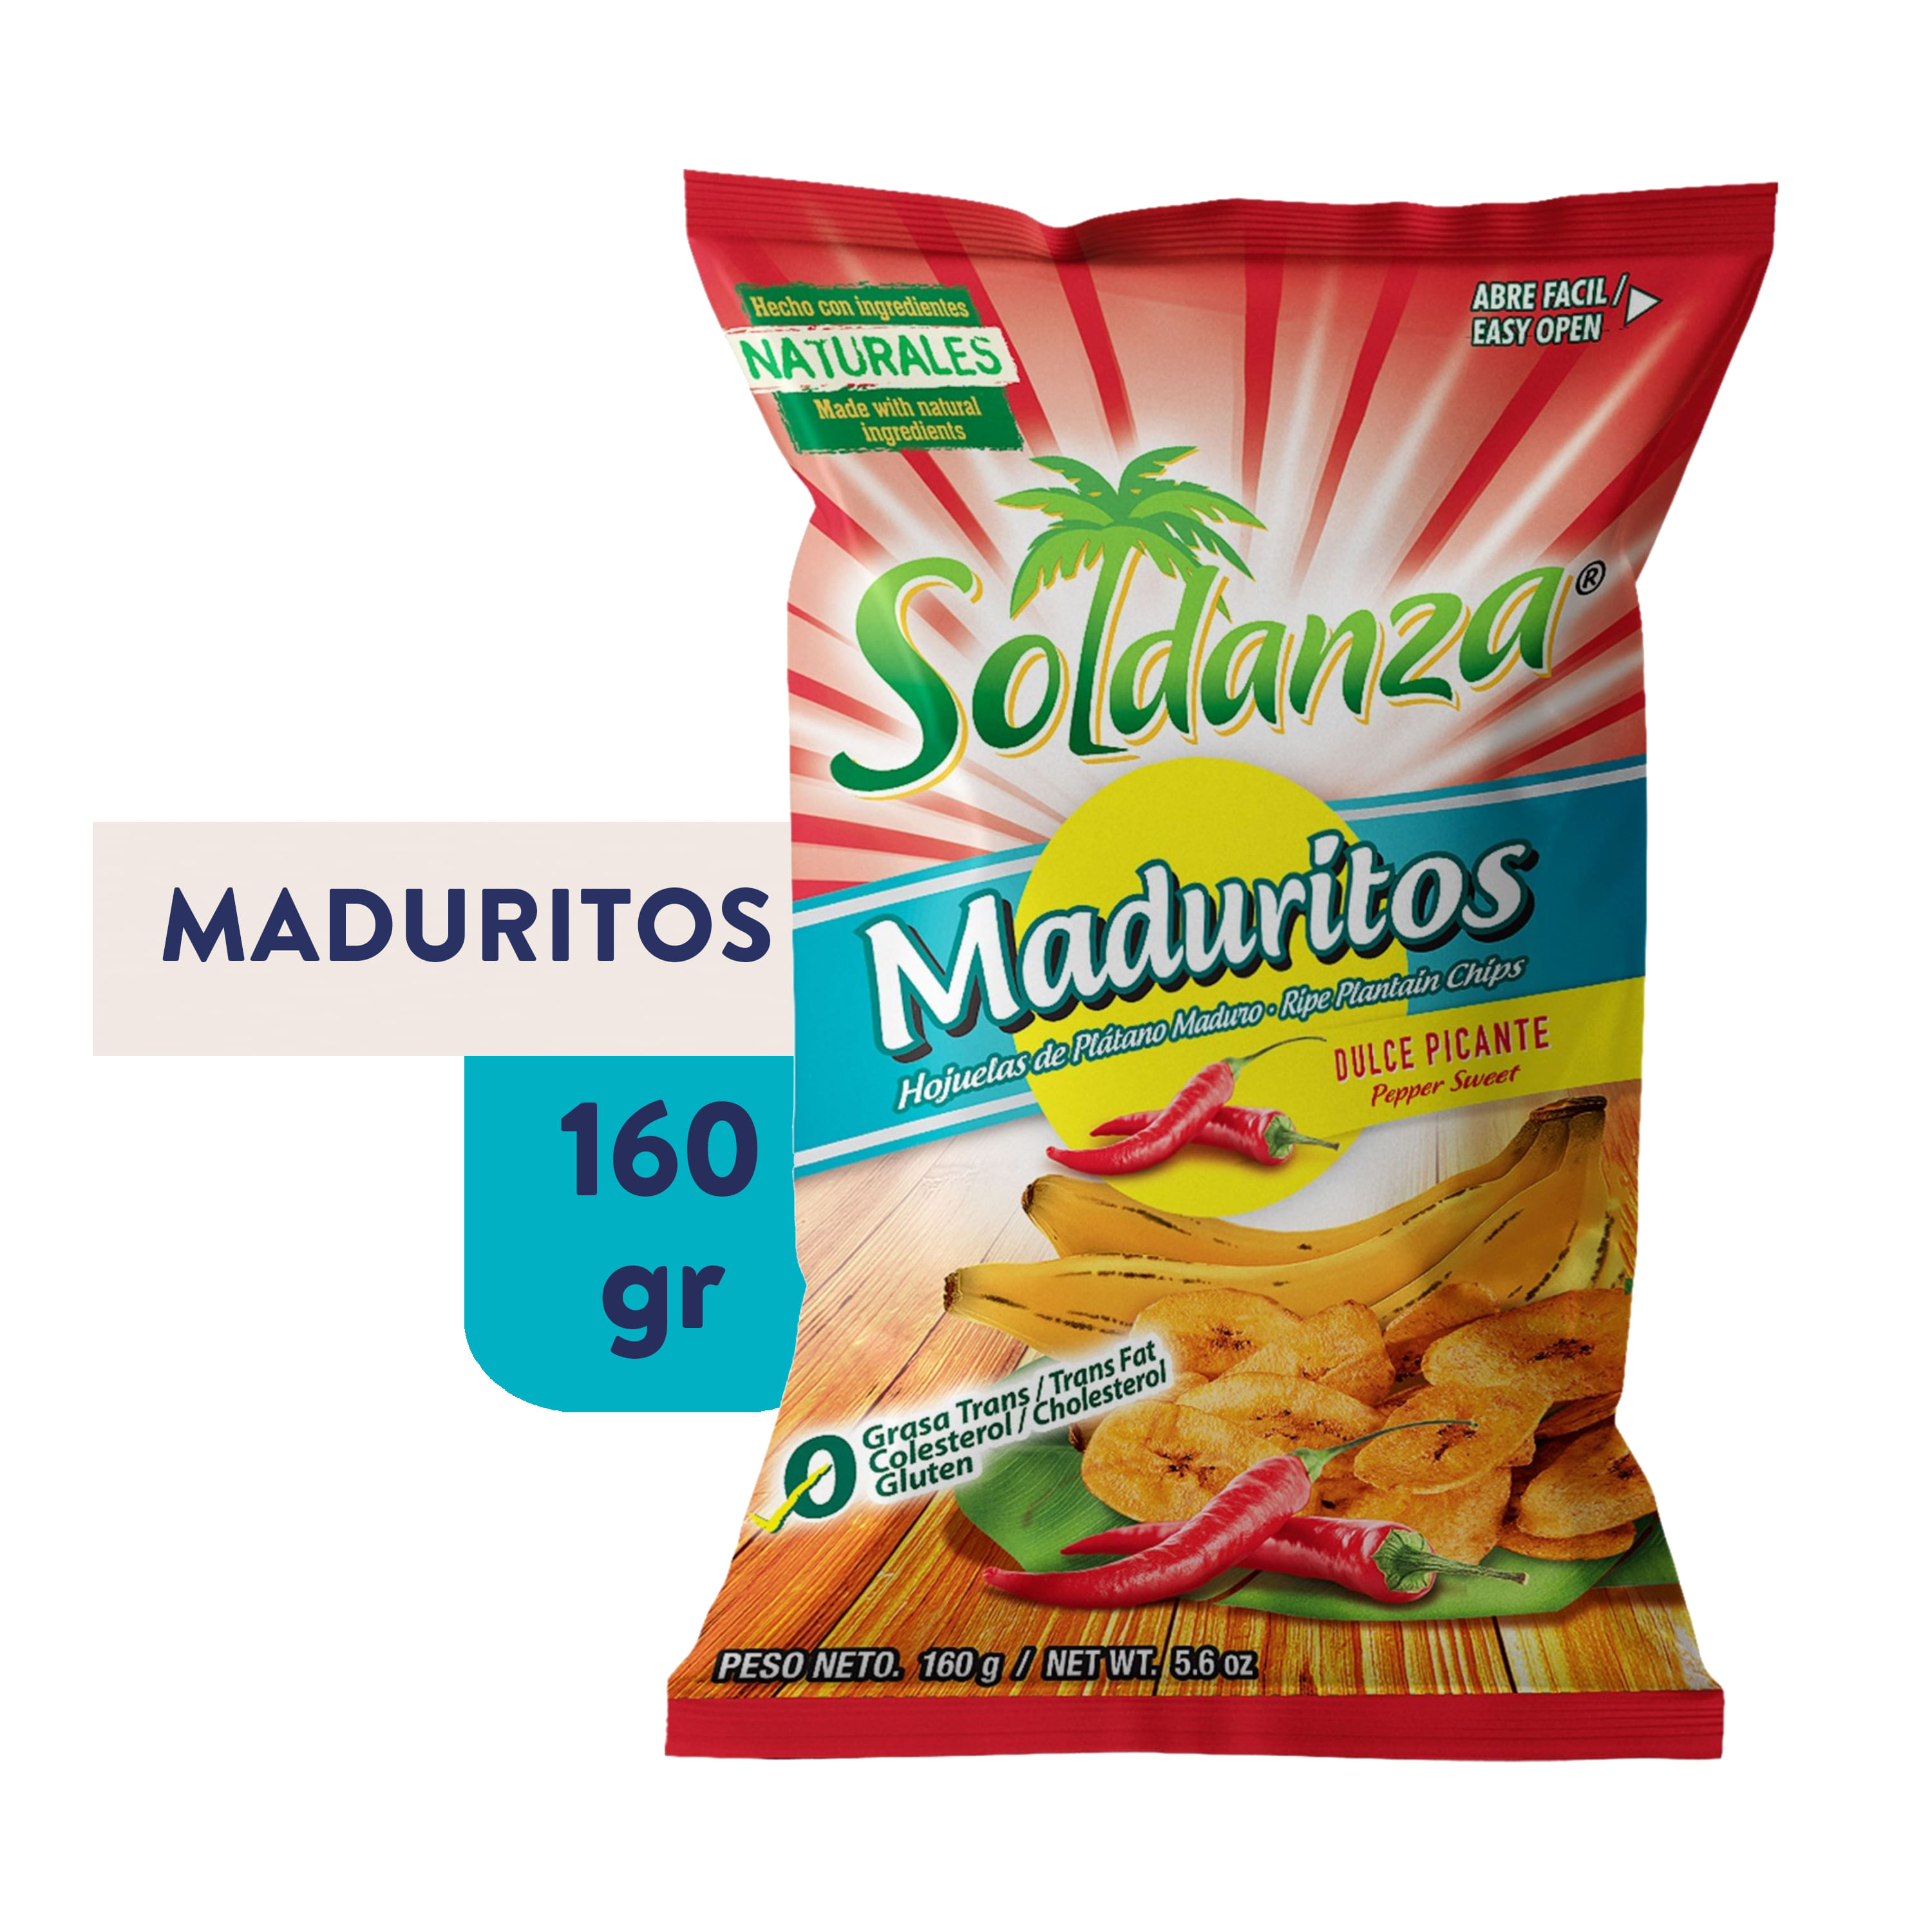 Snack-Soldanza-Platano-Maduro-Picante-160-gr-1-69326